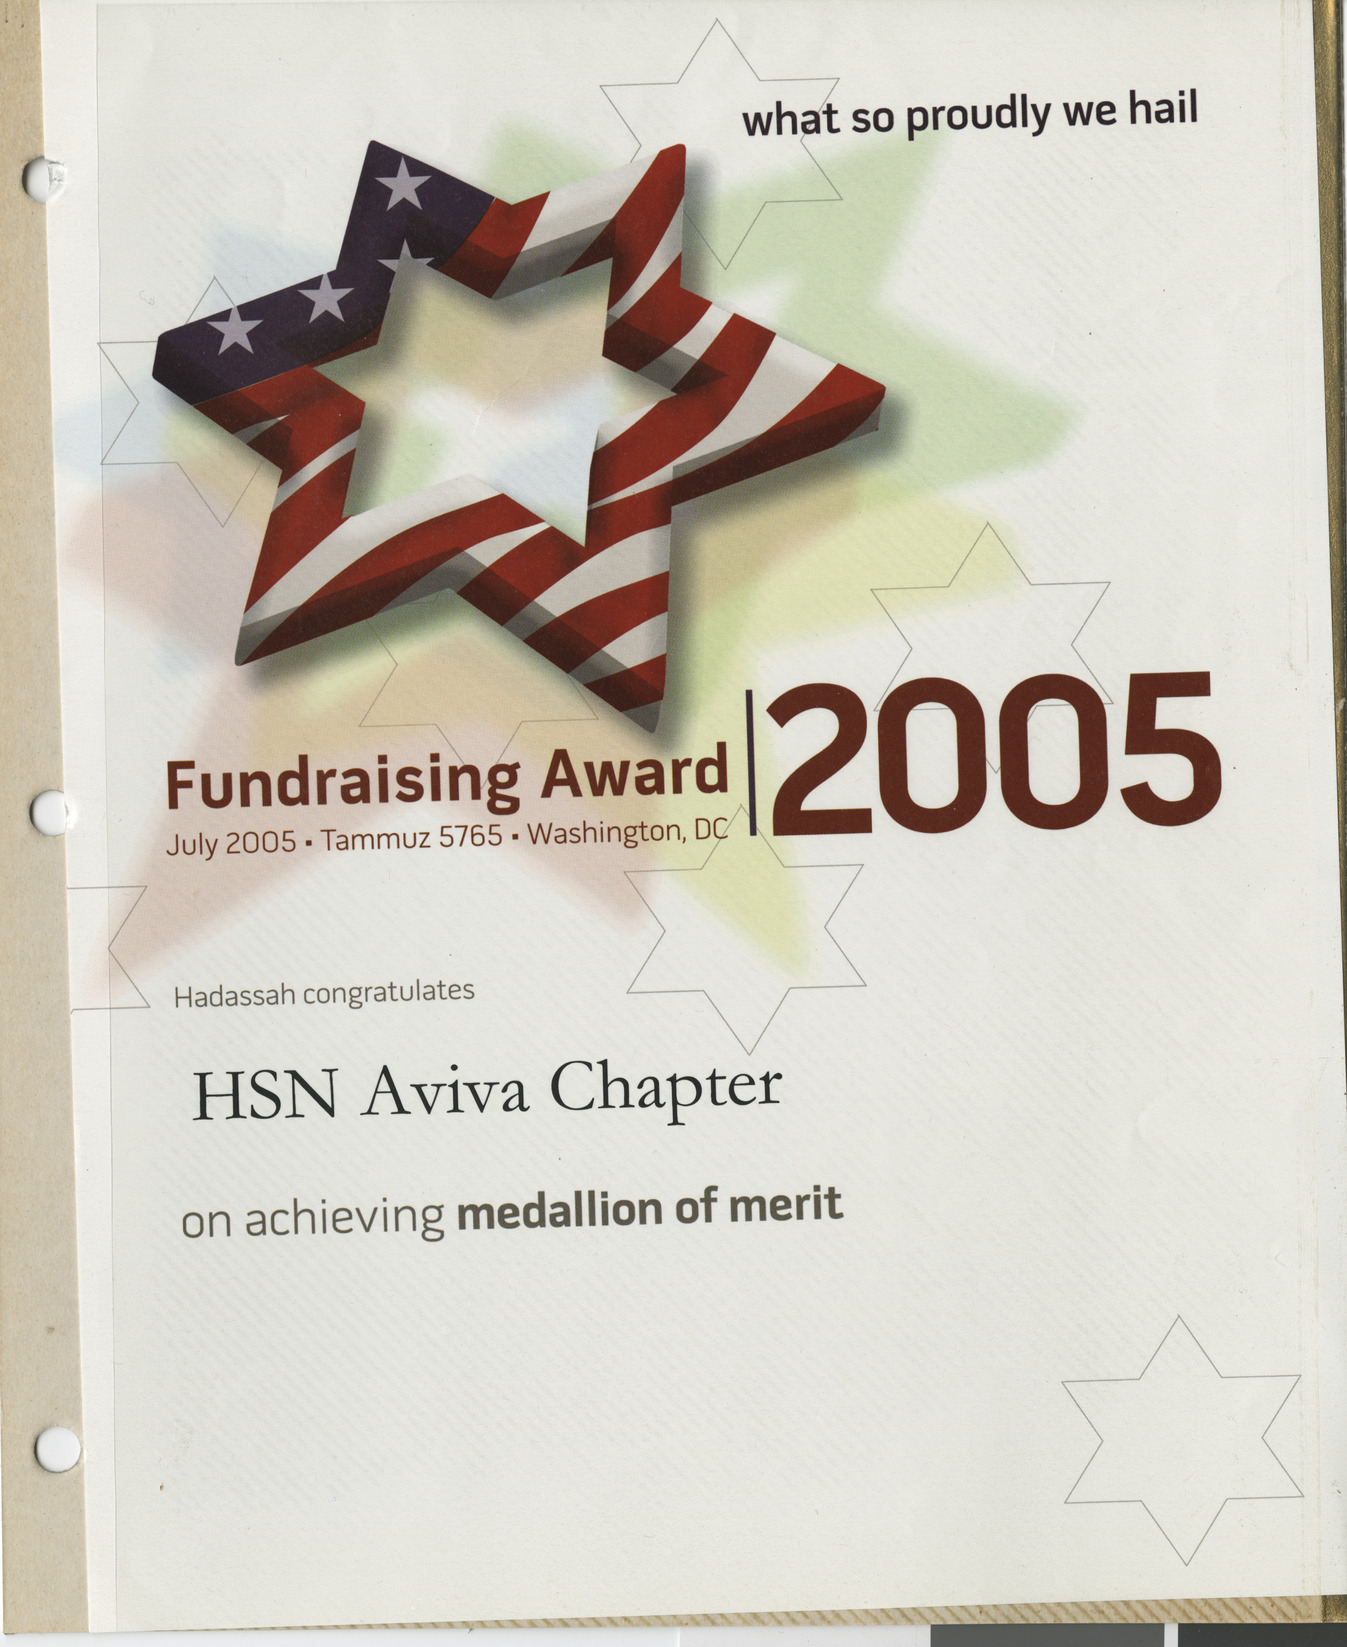 Fundraising award for HSN Aviva Chapter, July 2005